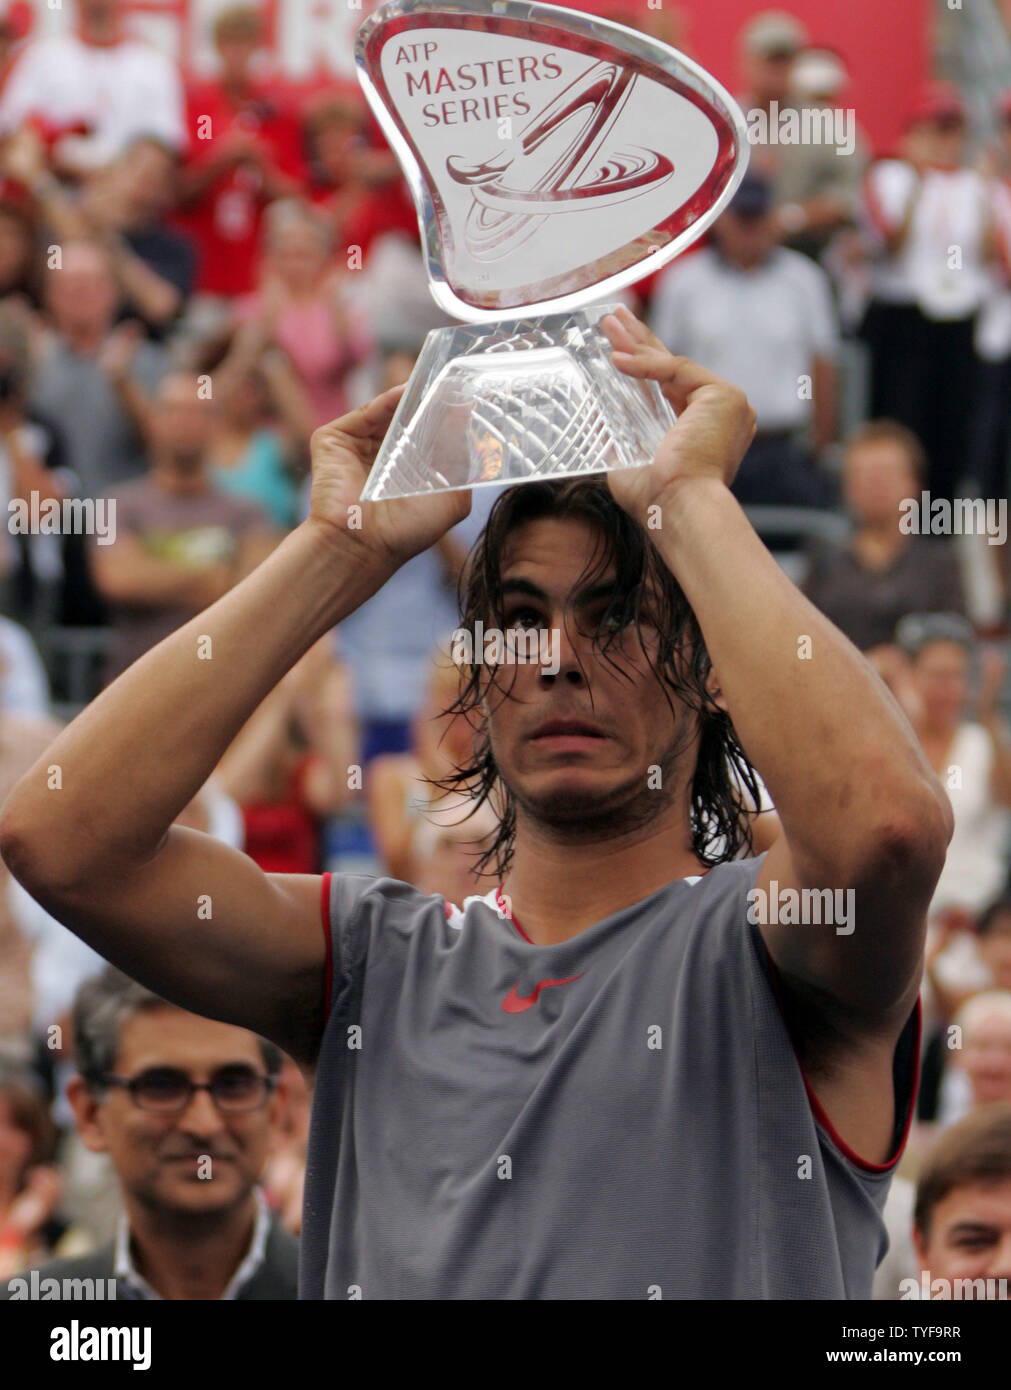 Rafael Nadal l'Espagne lève son trophée après avoir remporté la Coupe Rogers  du tennis masculin tournoi ATP Masters Series de Montréal le 14 août 2005.  Nadal,19, a remporté le match final contre